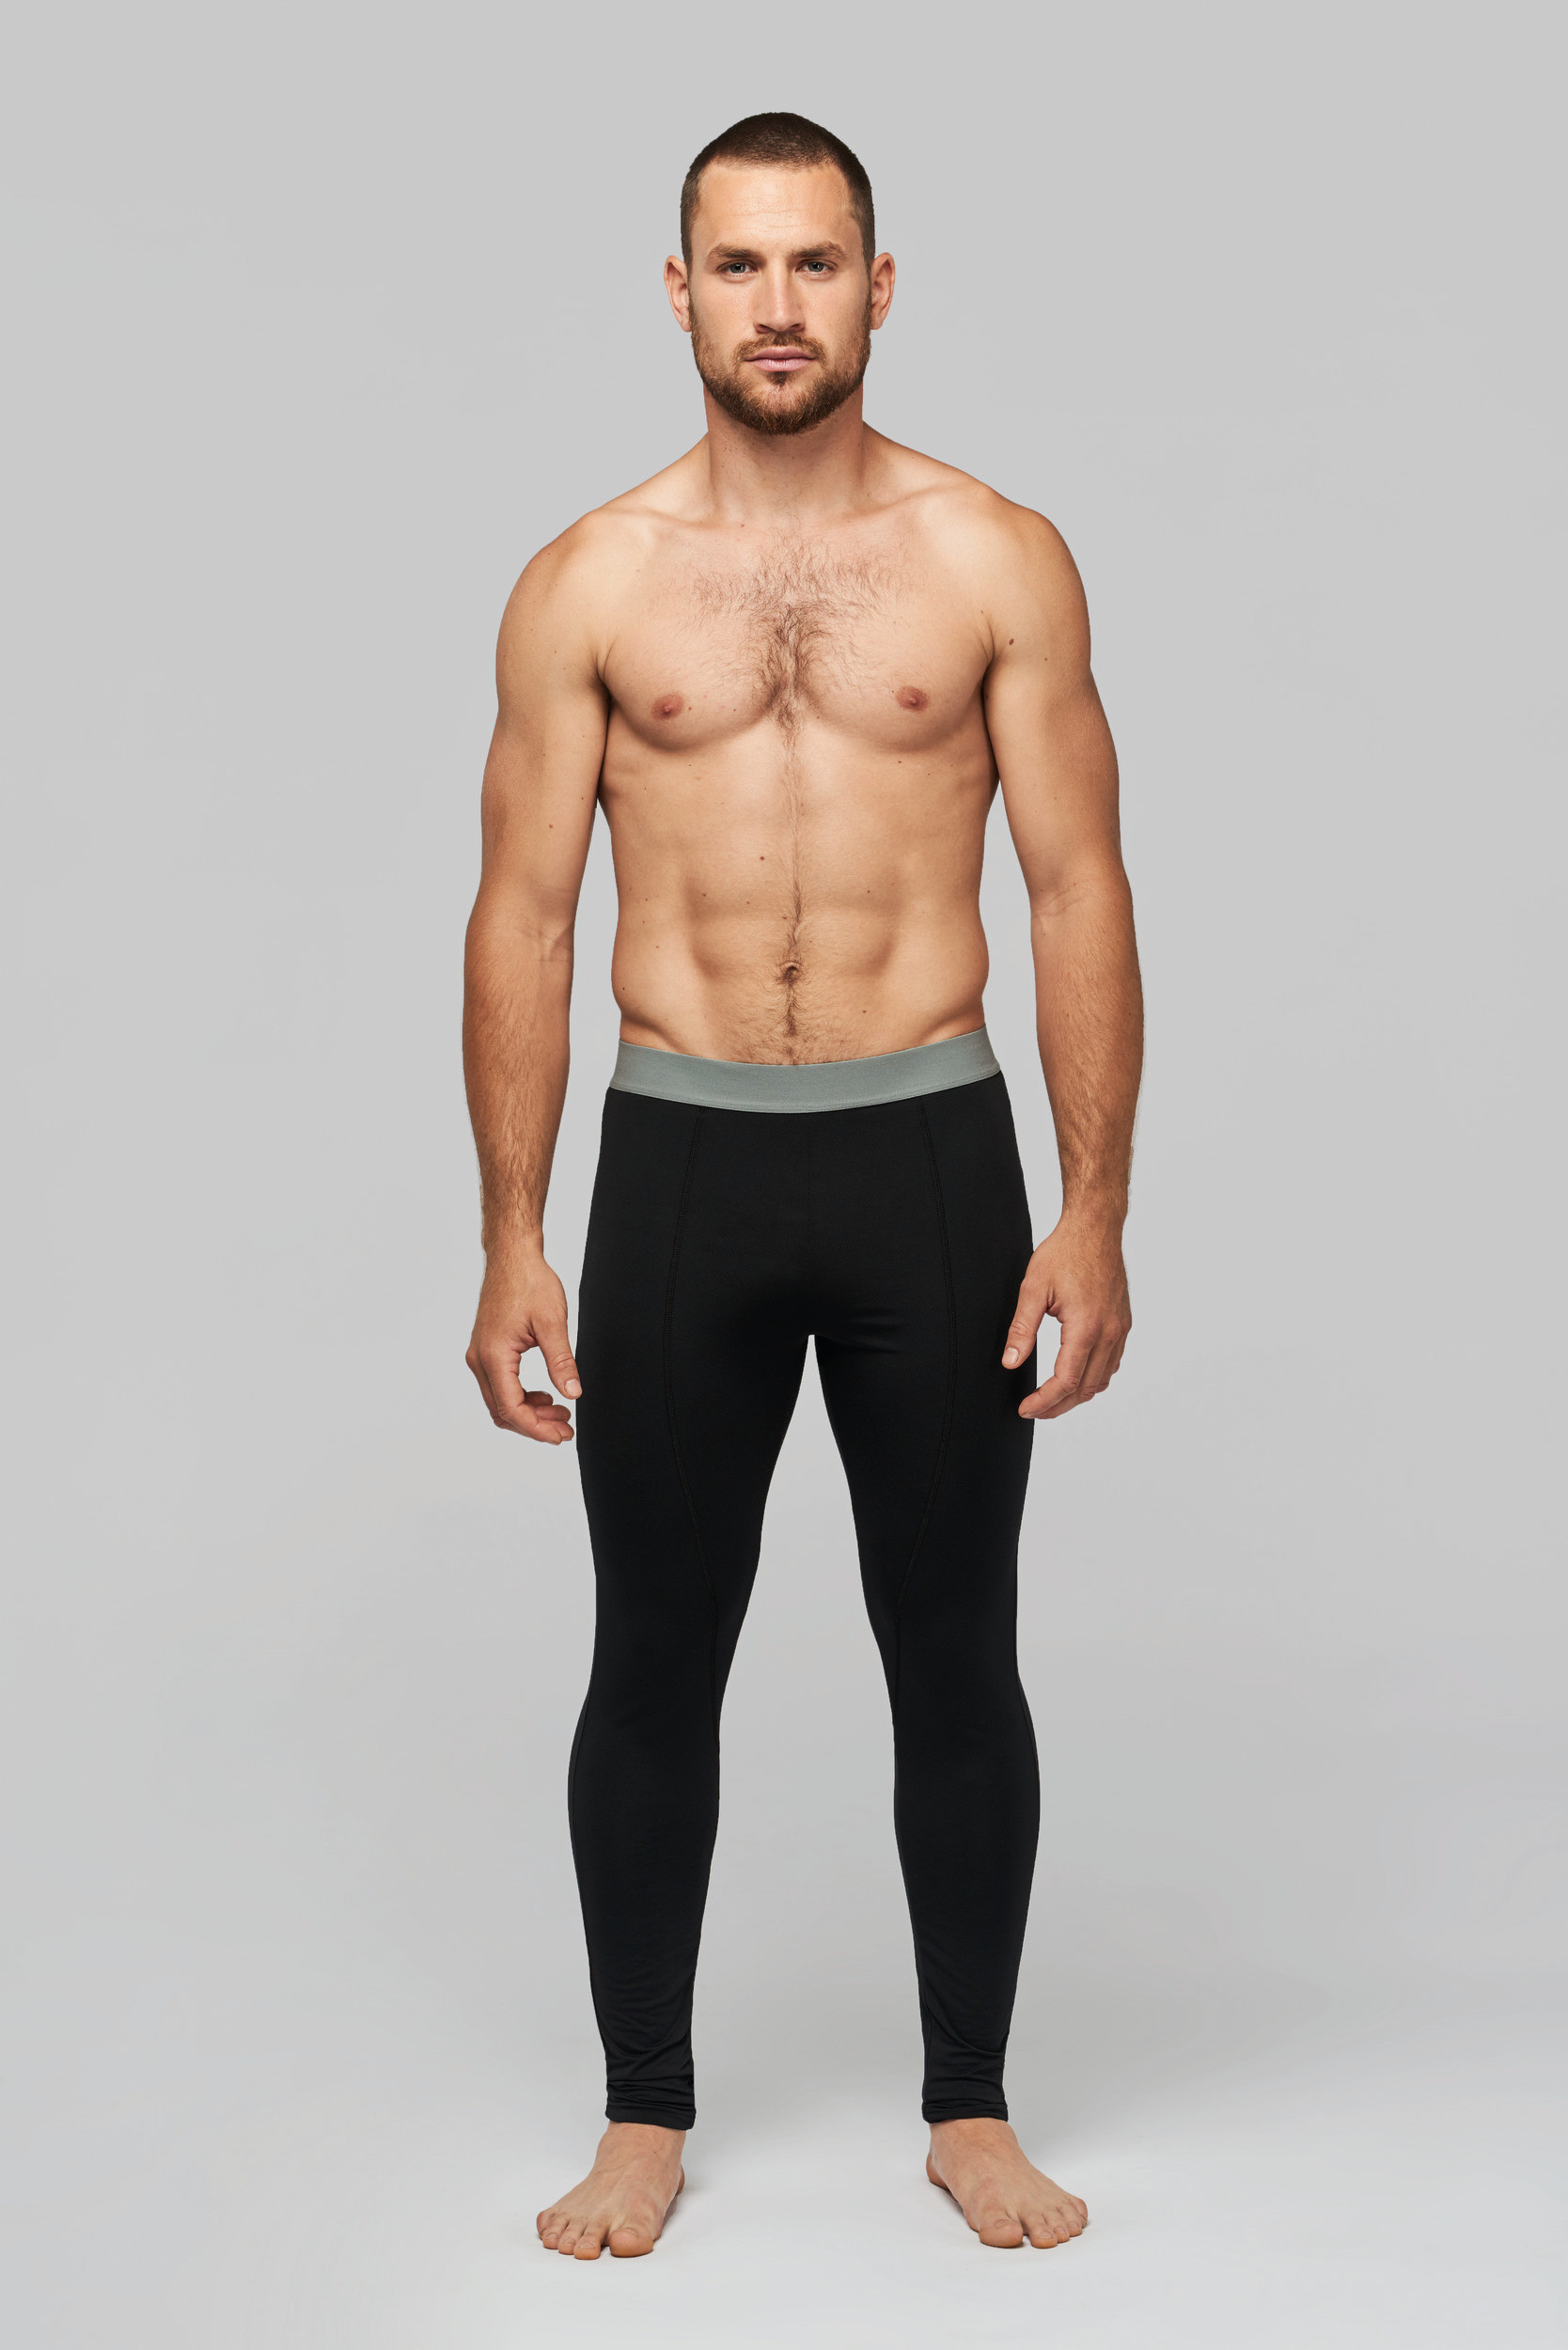 Proact PA017 - Collant sous-vêtement sport homme